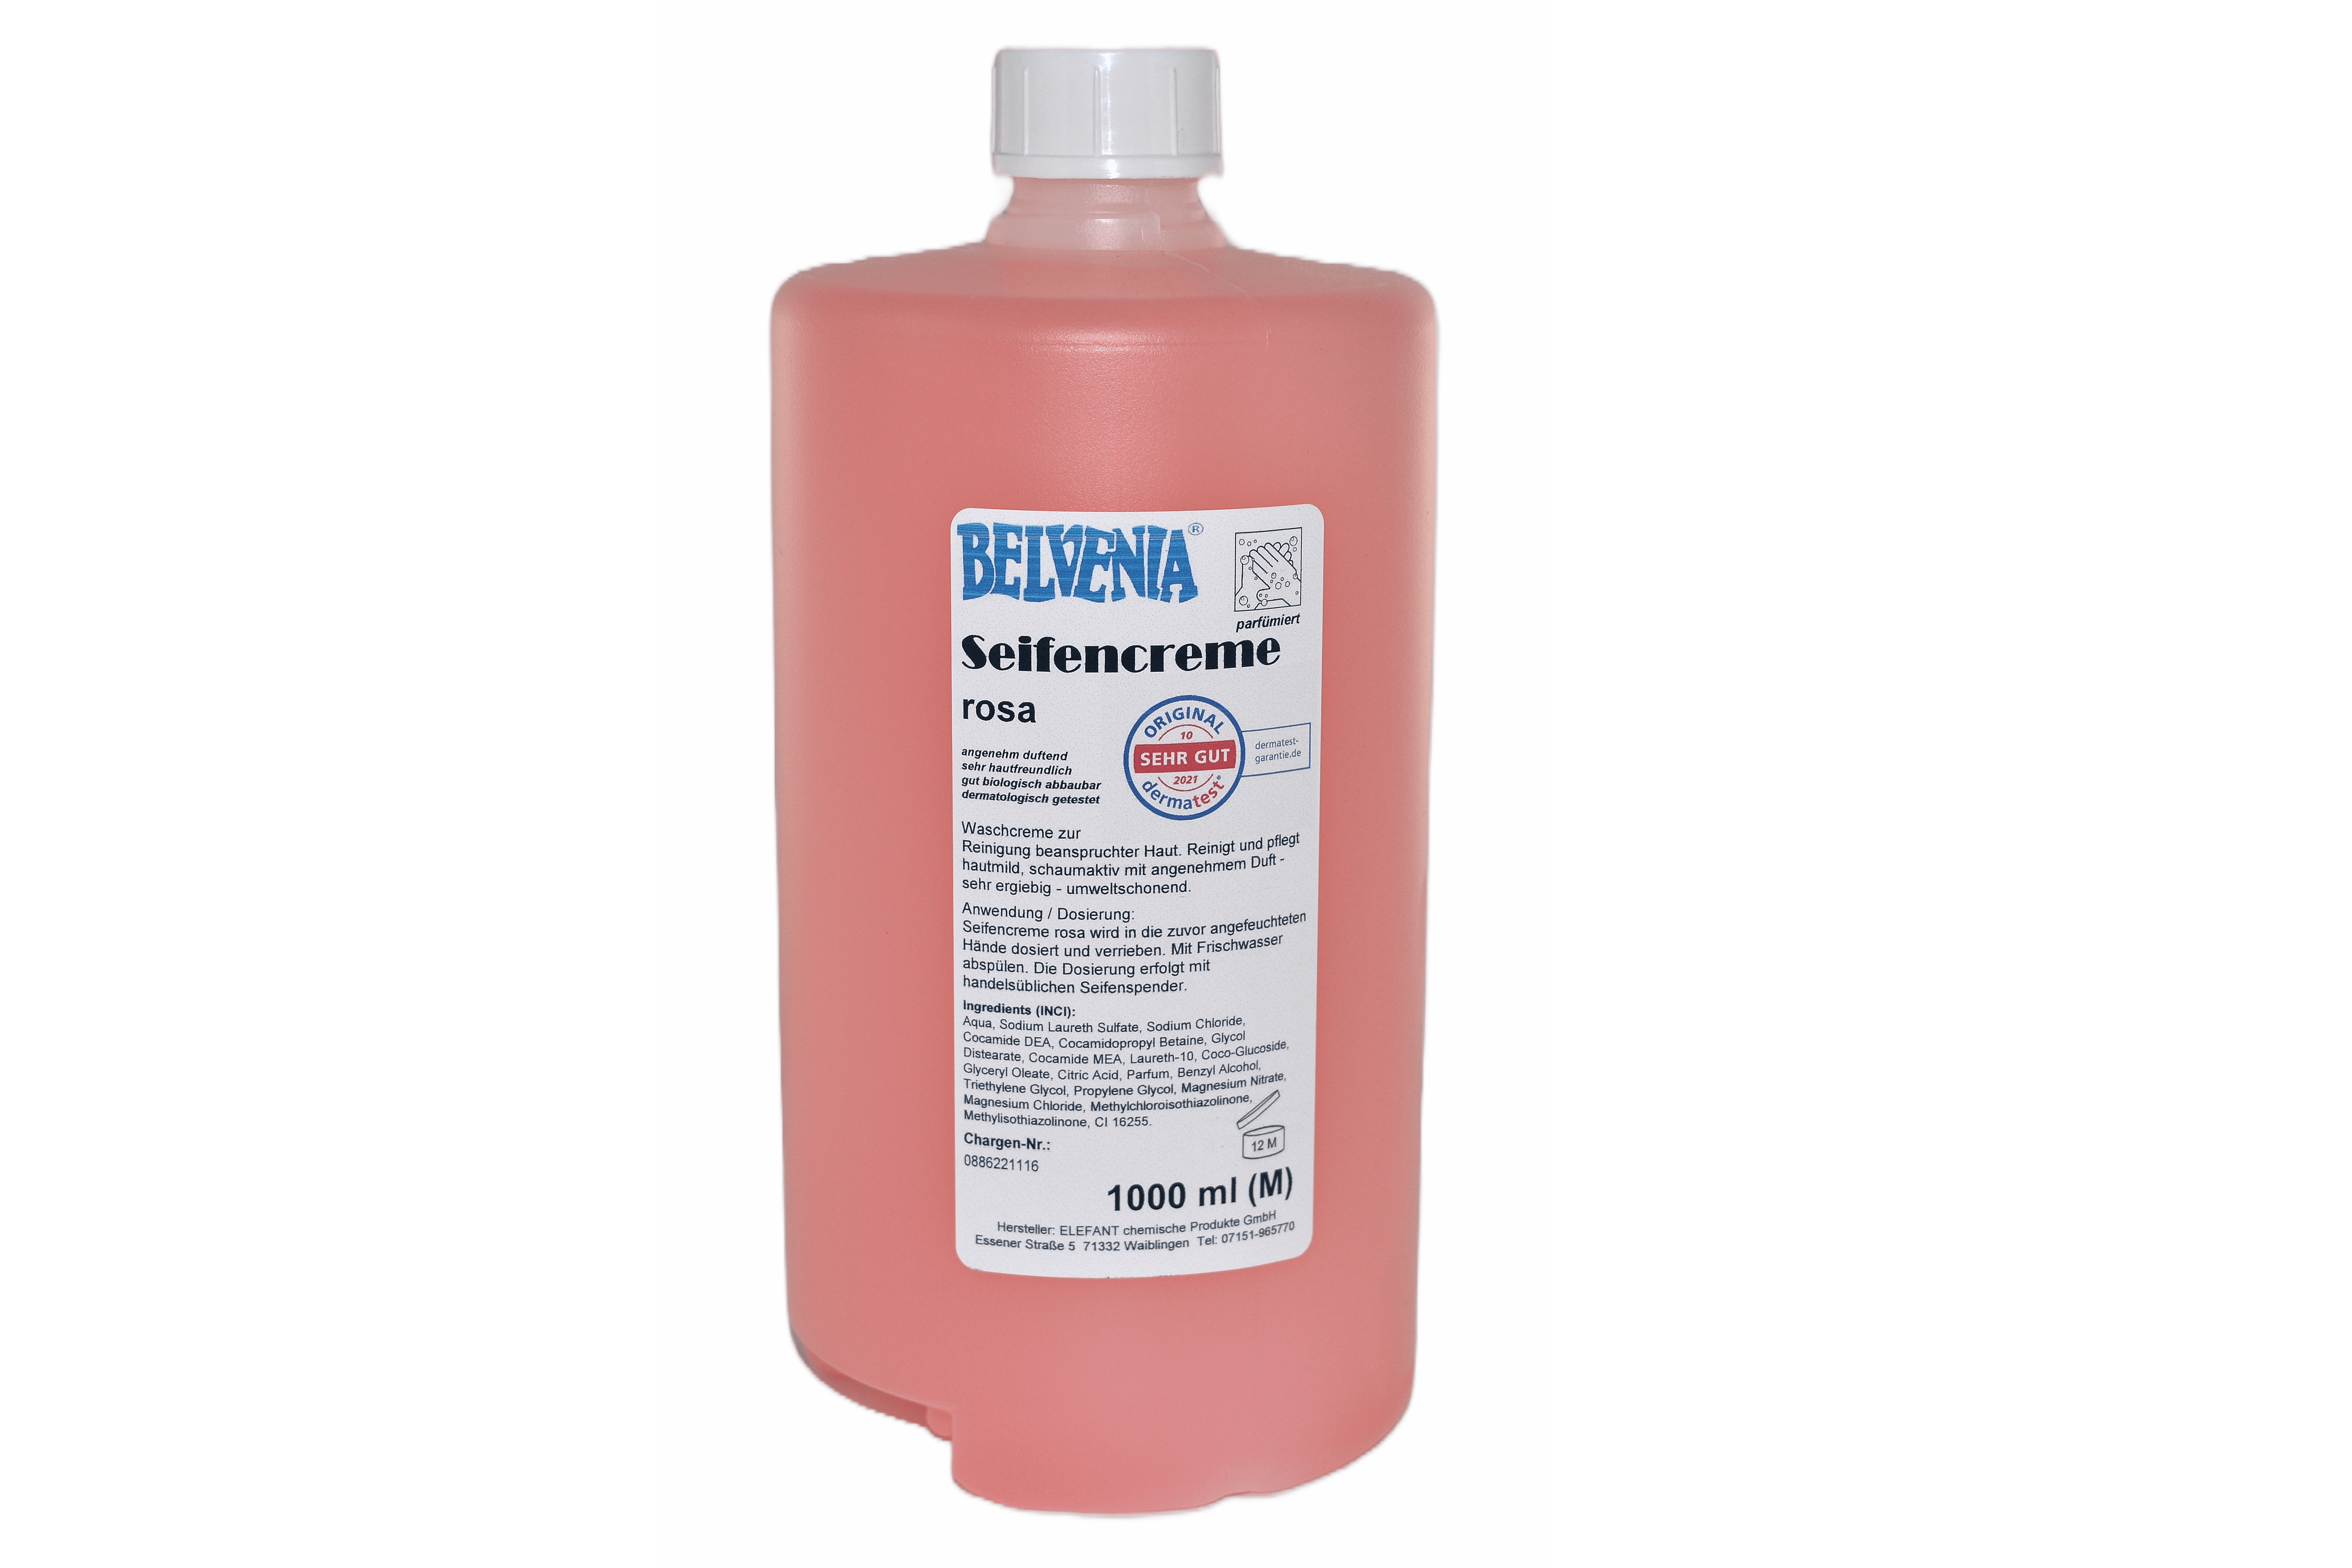 BELVENIA-Cremeseife rosa 1000 ml Spenderflasche (T) Karton mit 6x1000 ml